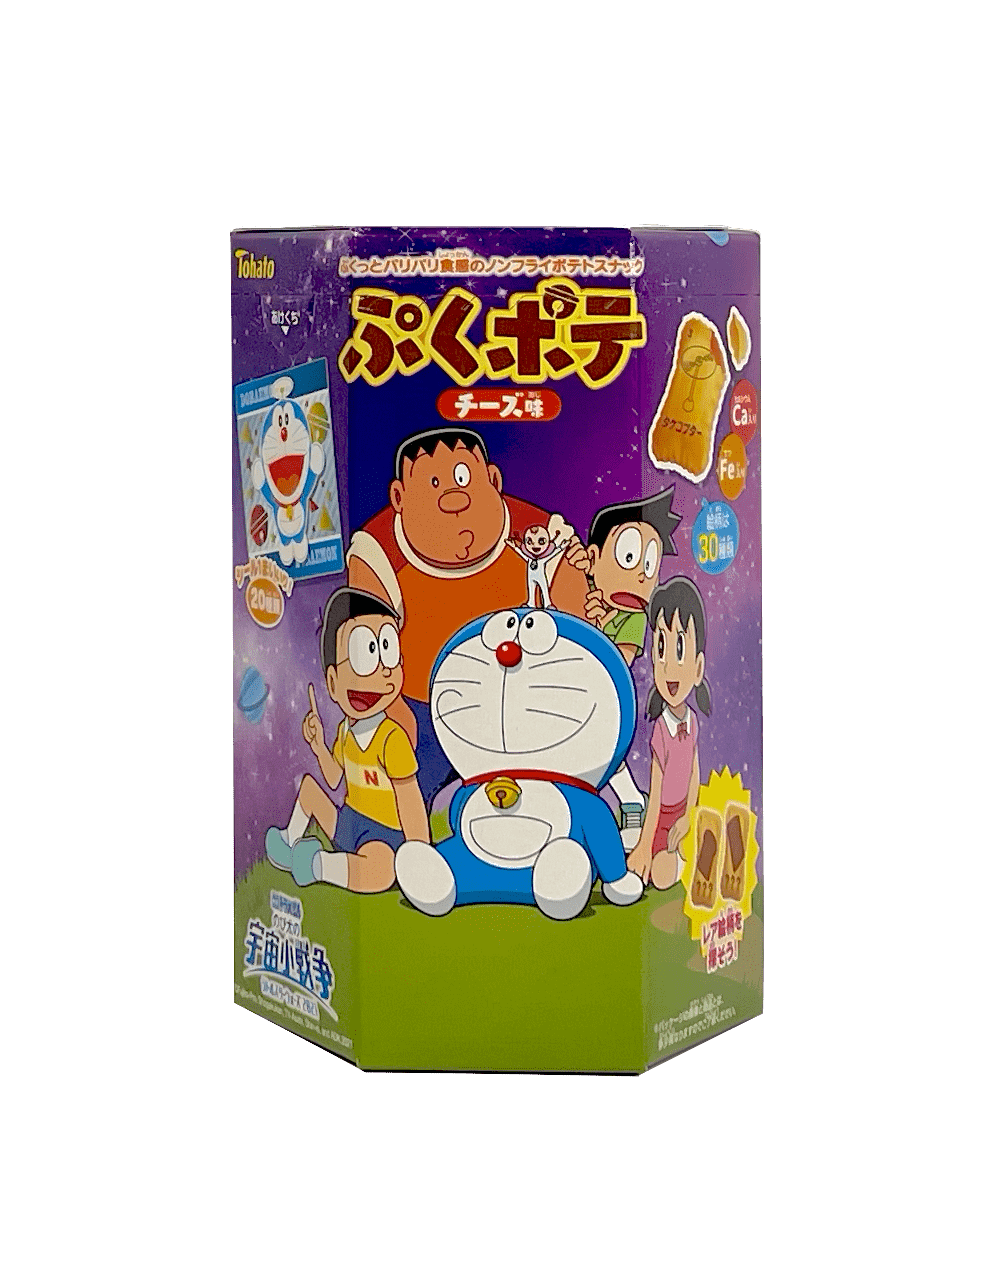 哆啦A梦 芝士马铃薯饼干 20克 Tohato 日本